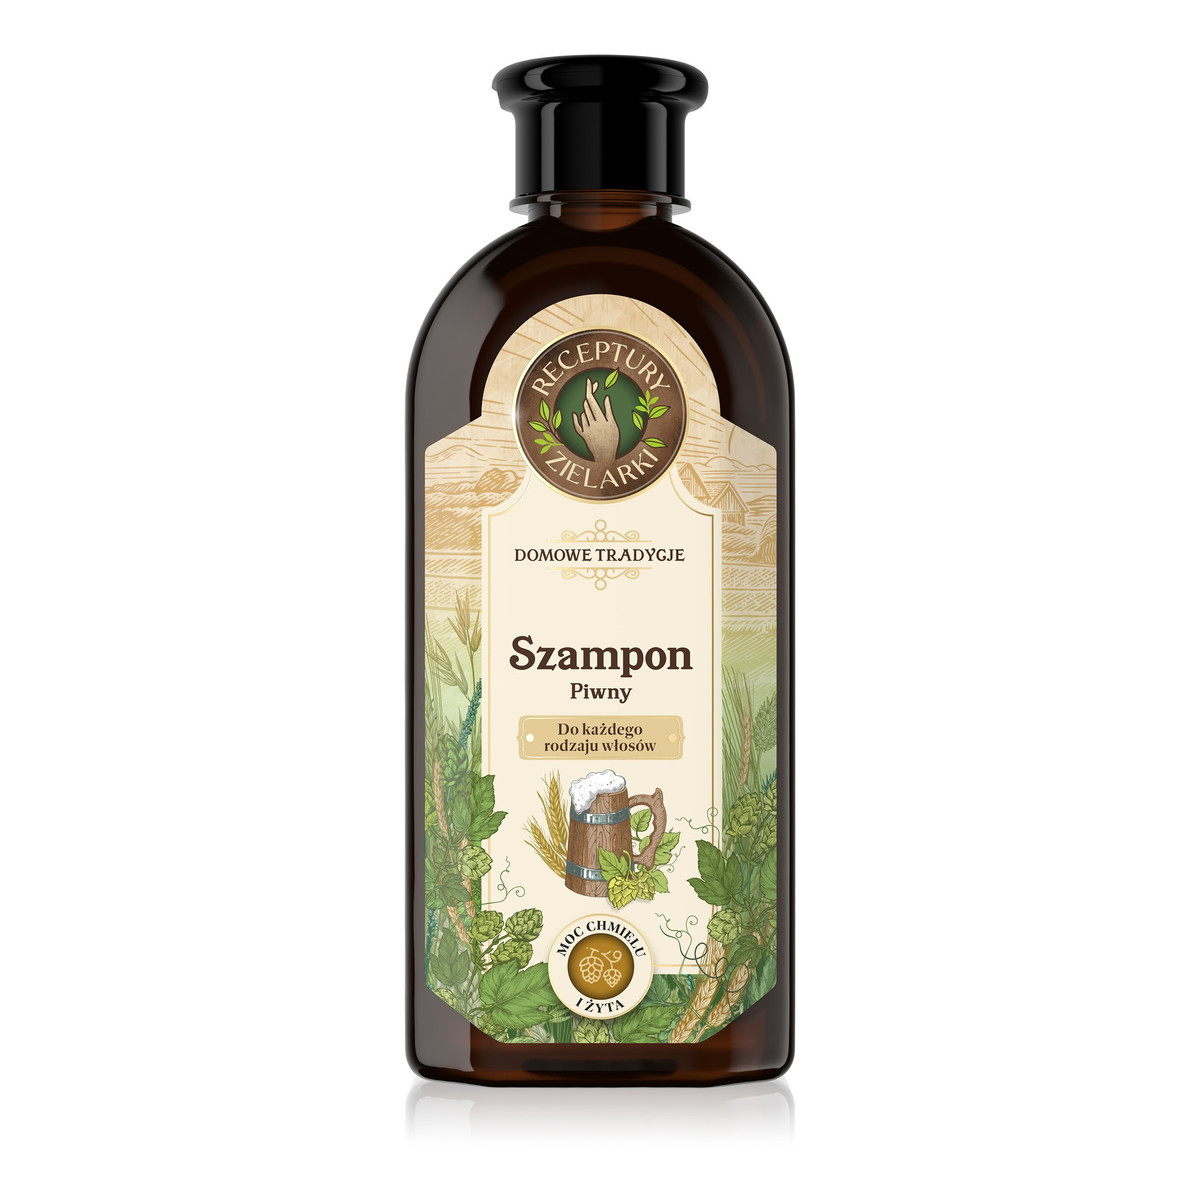 Receptury Zielarki Domowe Tradycje szampon piwny do każdego rodzaju włosów 350ml